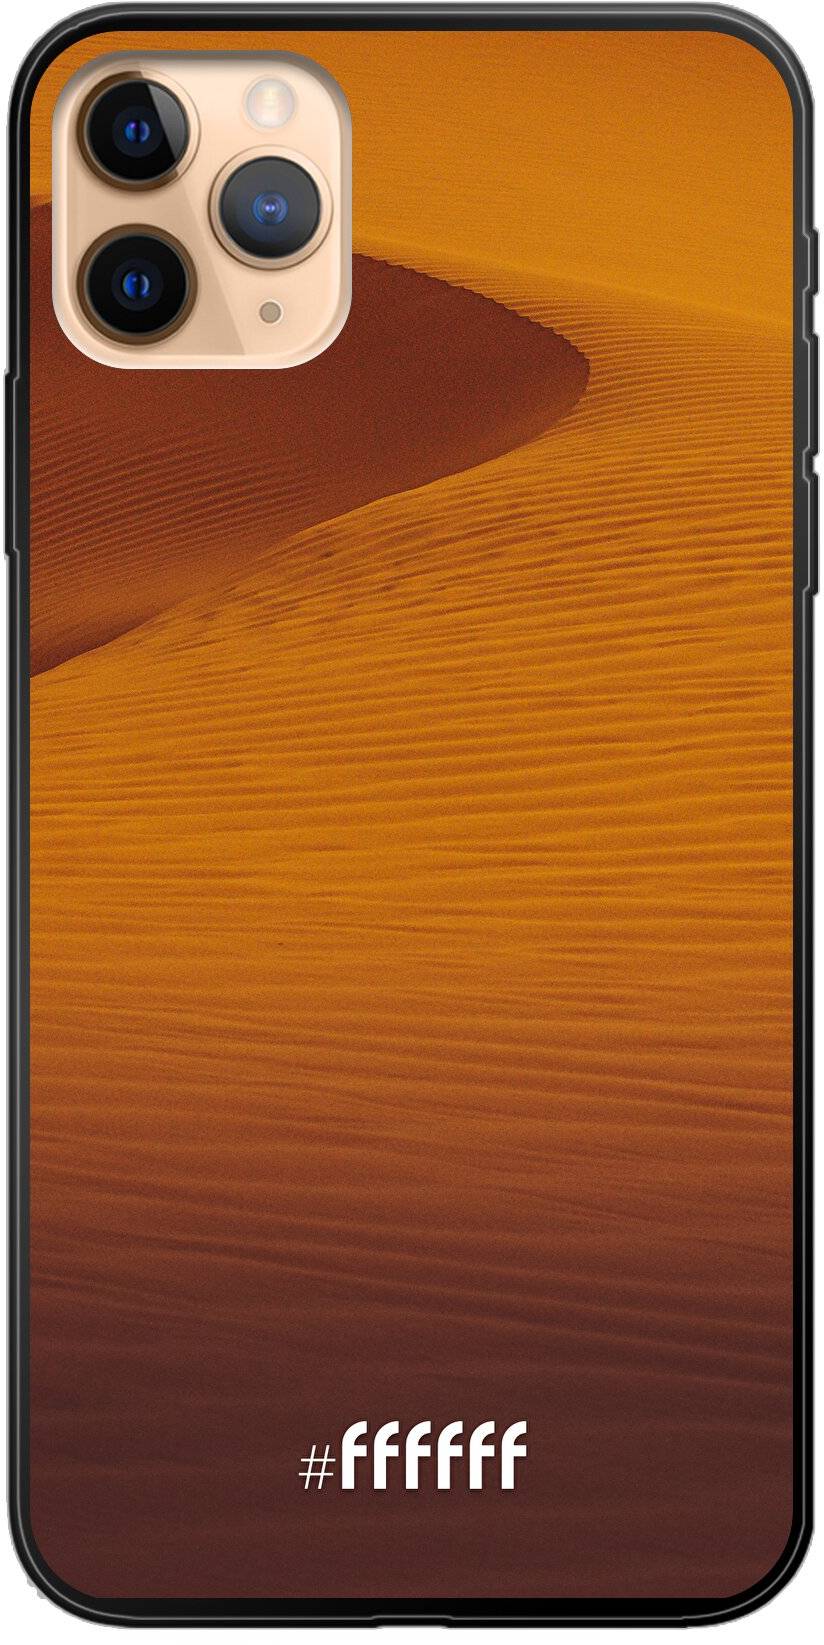 Sand Dunes iPhone 11 Pro Max